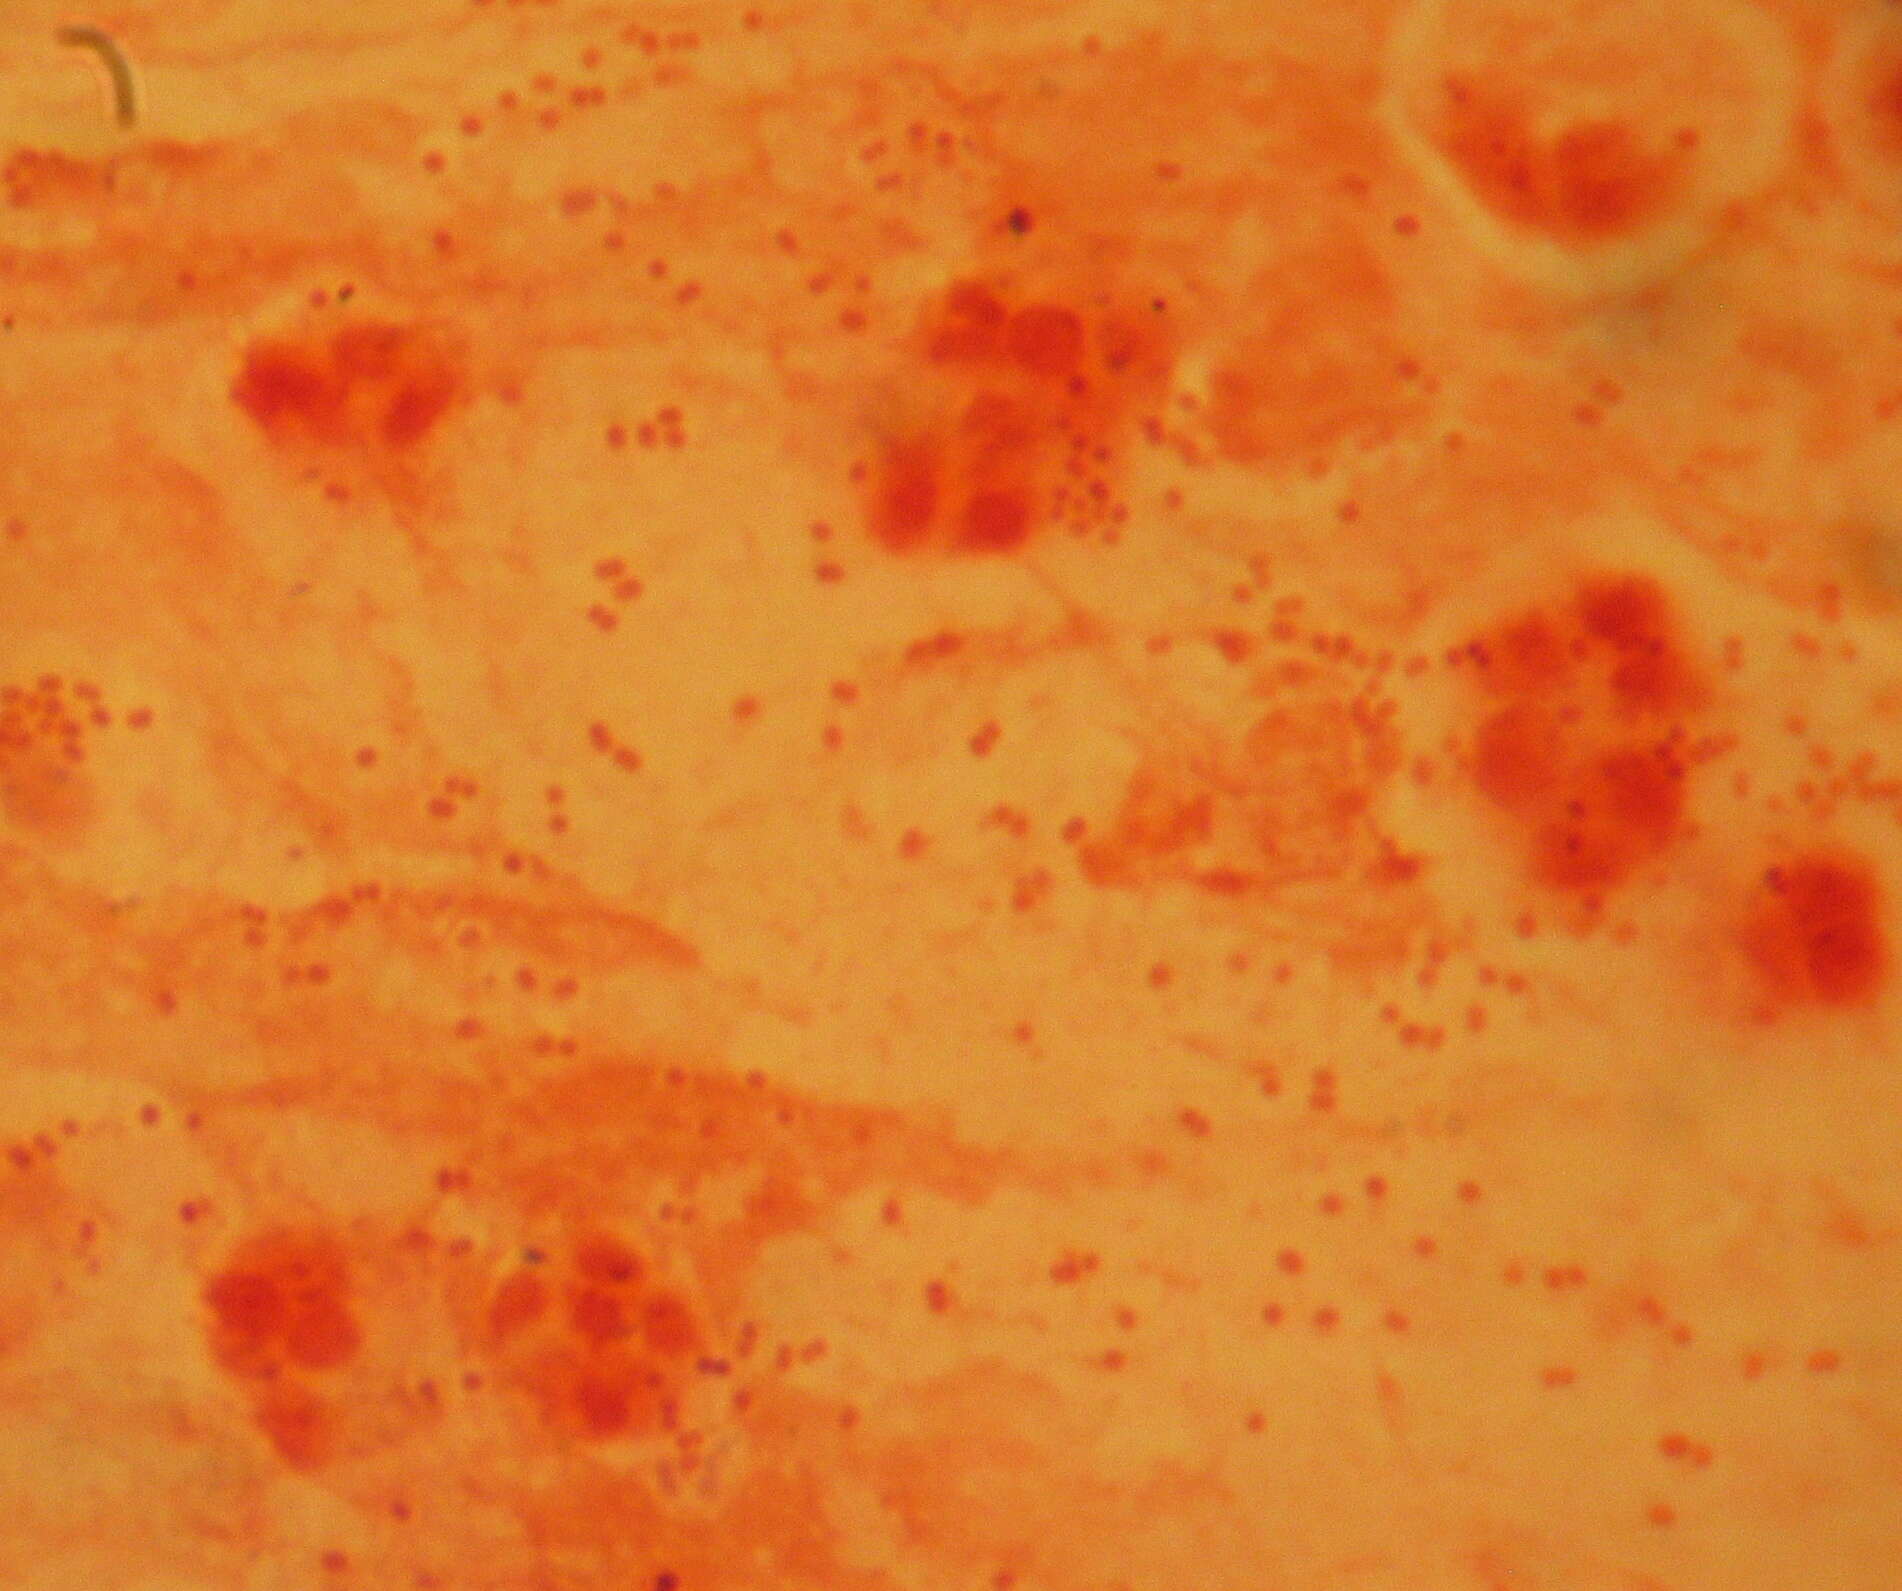 Image of Haemophilus influenzae